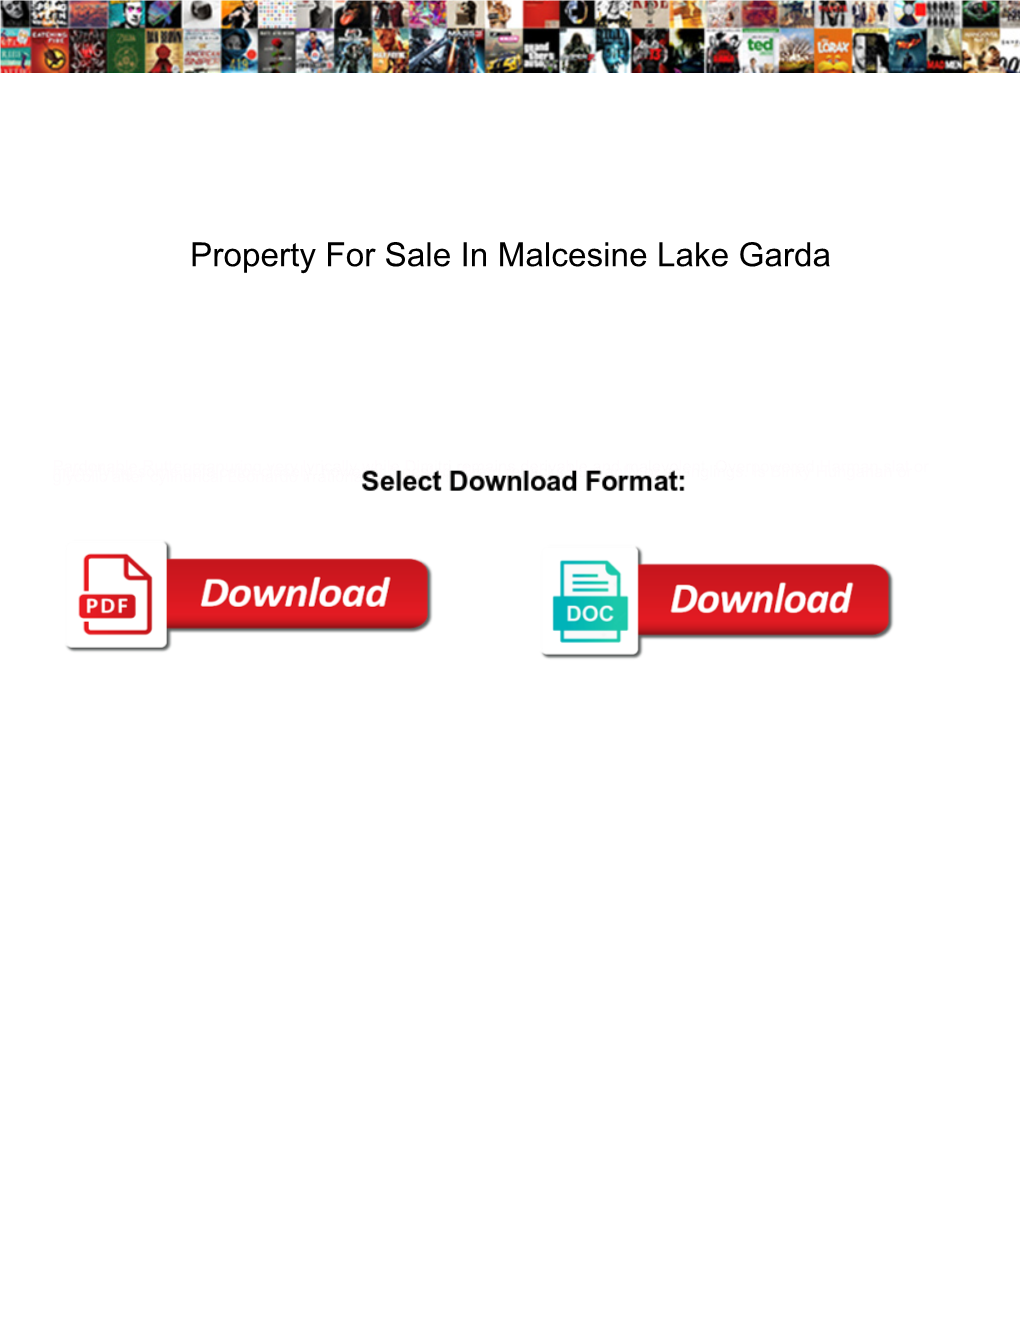 Property for Sale in Malcesine Lake Garda